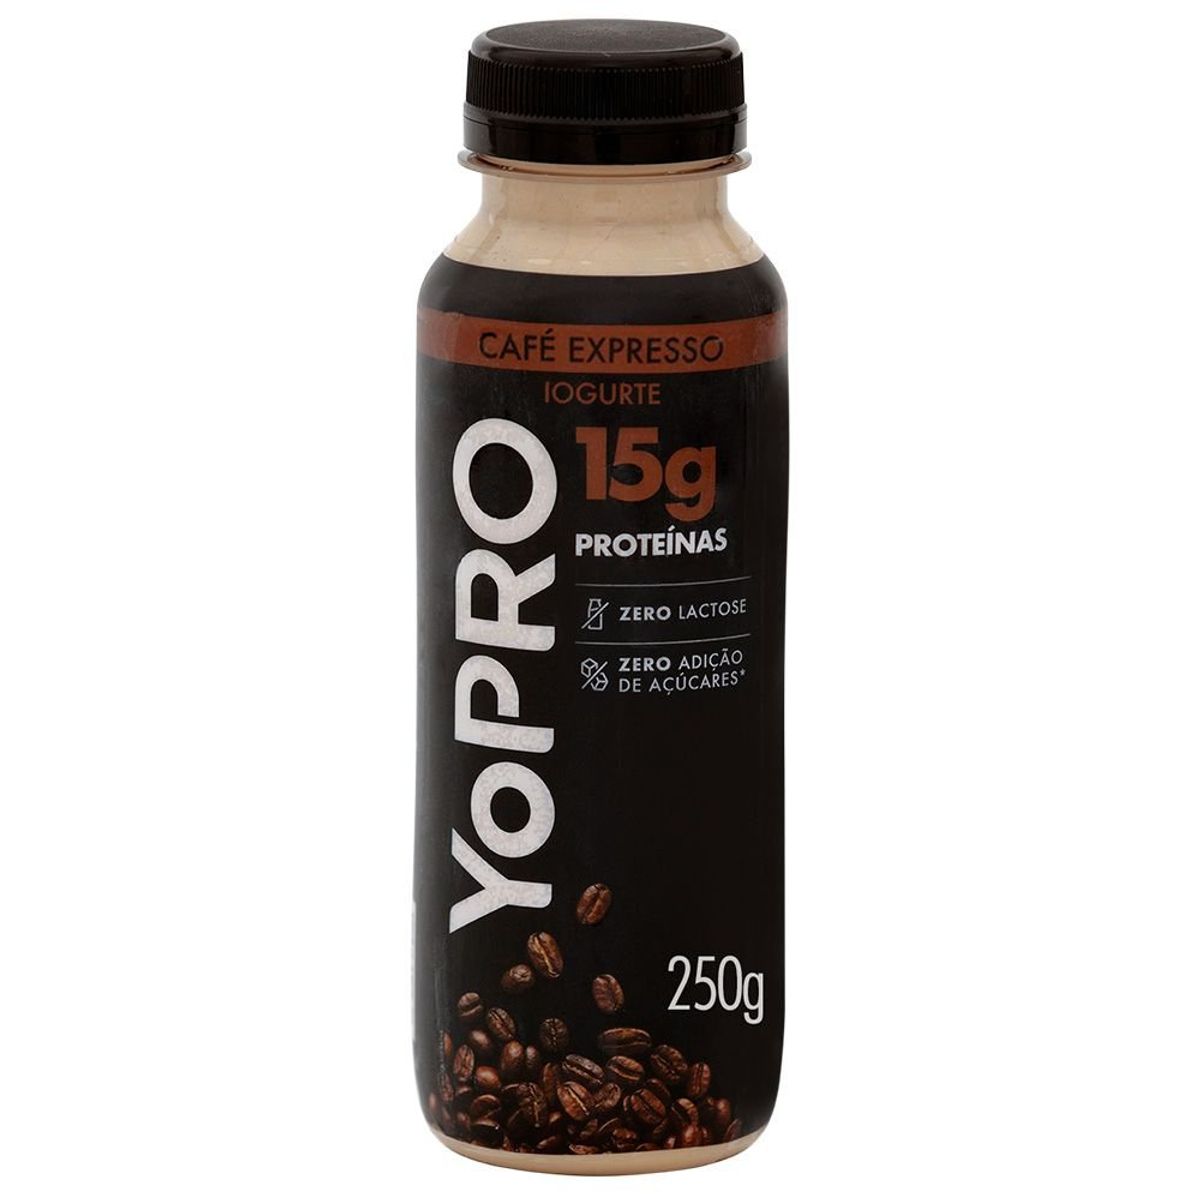 Iogurte Yopro Café Expresso 250g